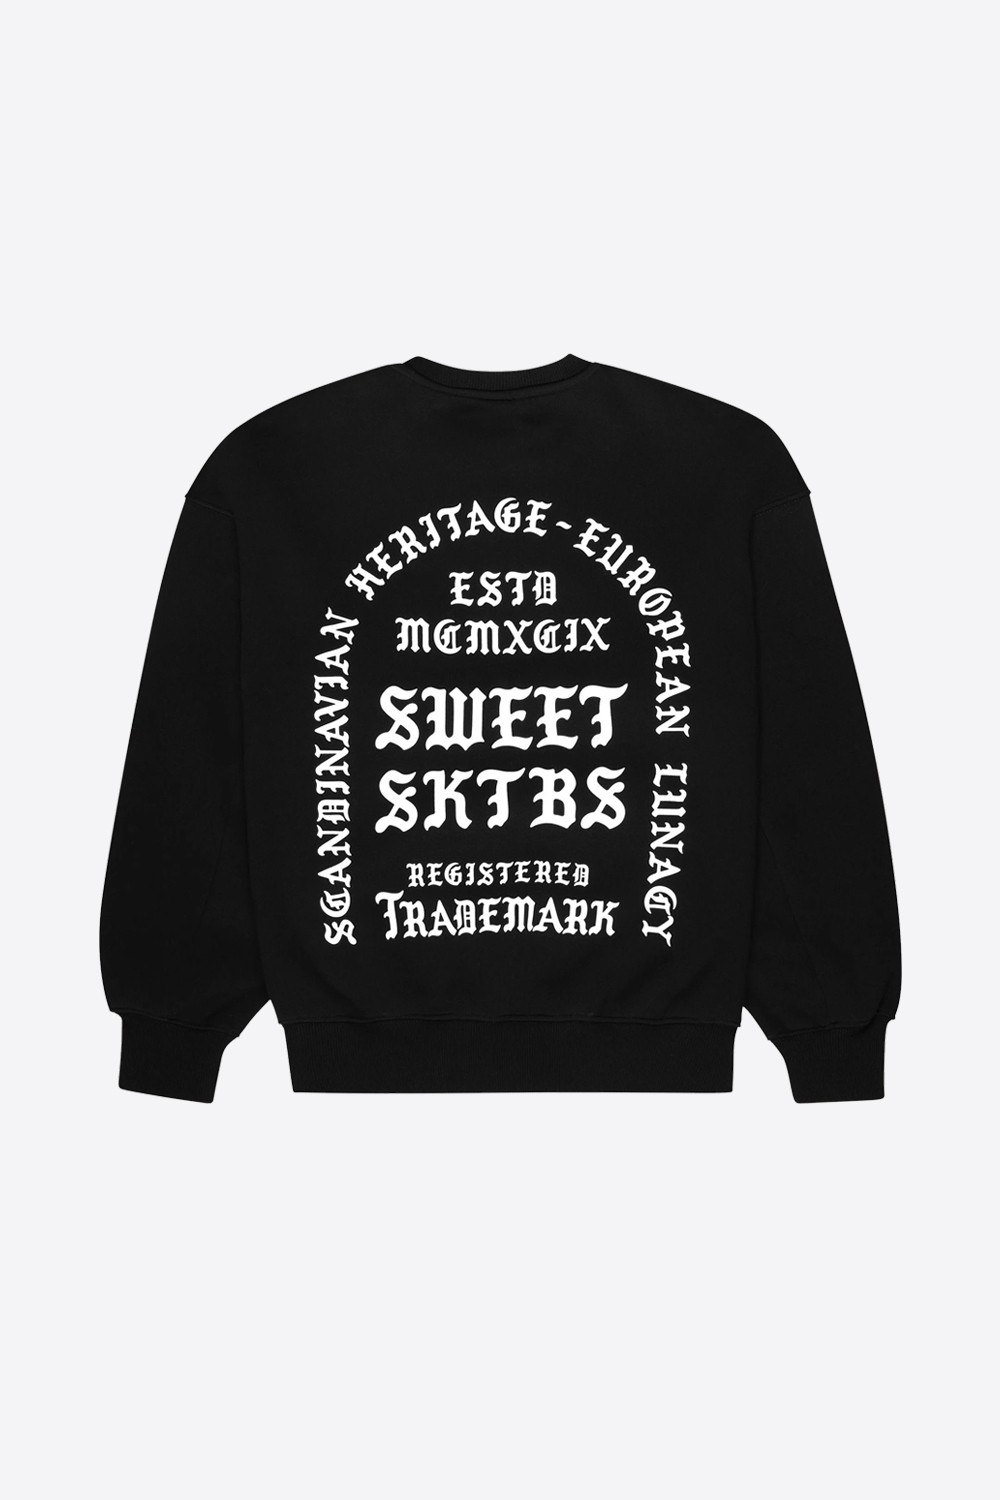 90's Inspired Oversize Printed Sweatshirt (SWTSKTBS-7)